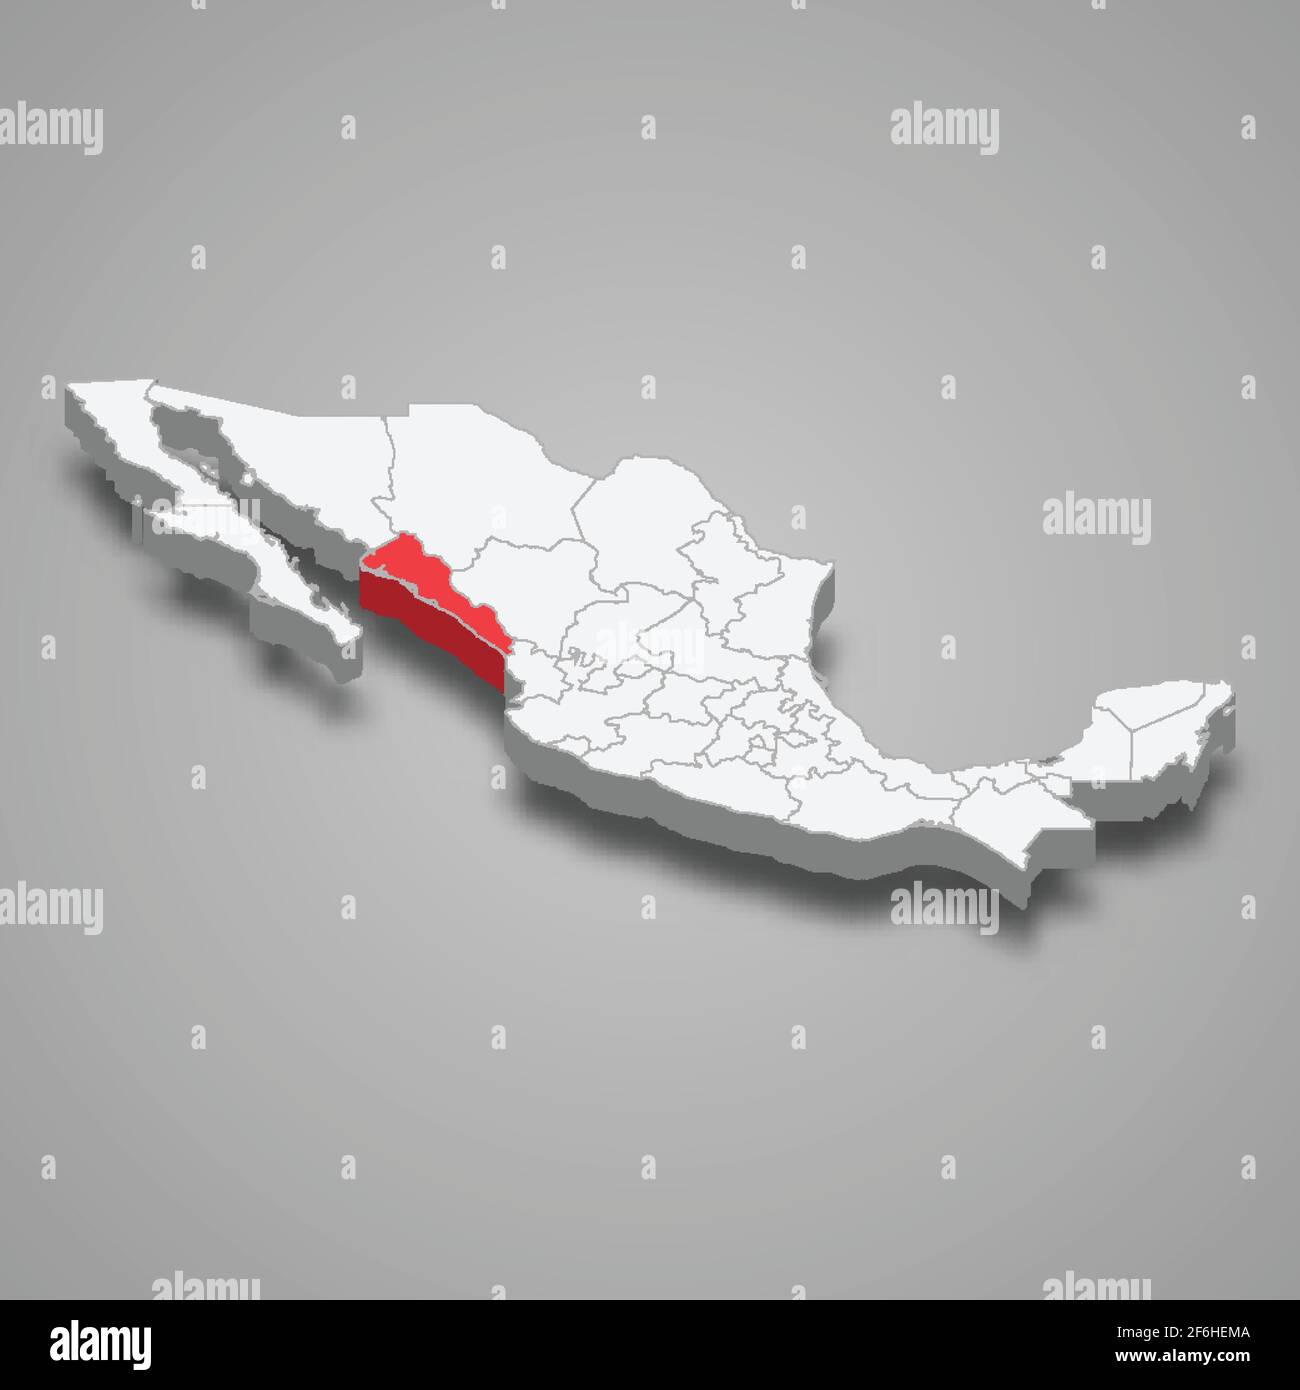 Sinaloa region location within Mexico 3d isometric map Stock Vector